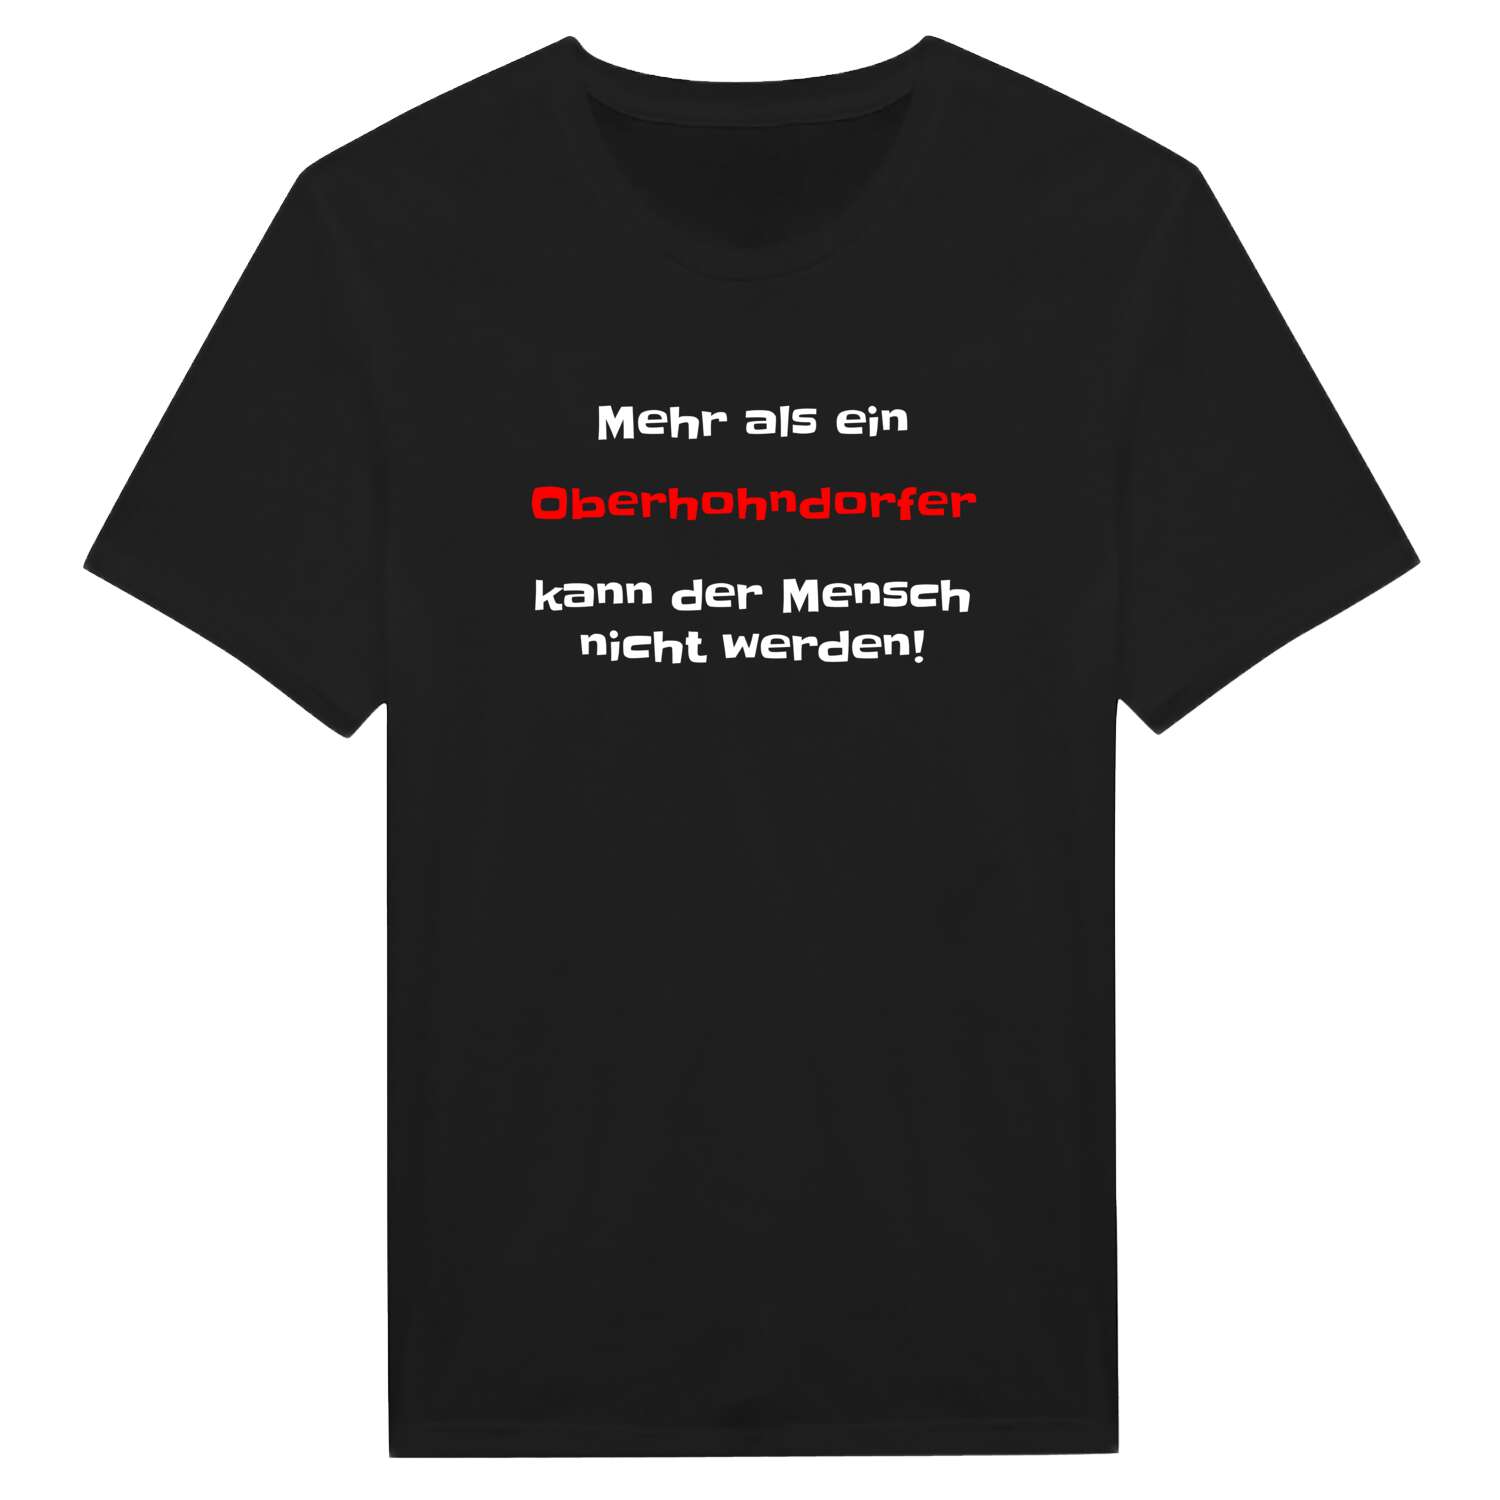 Oberhohndorf T-Shirt »Mehr als ein«